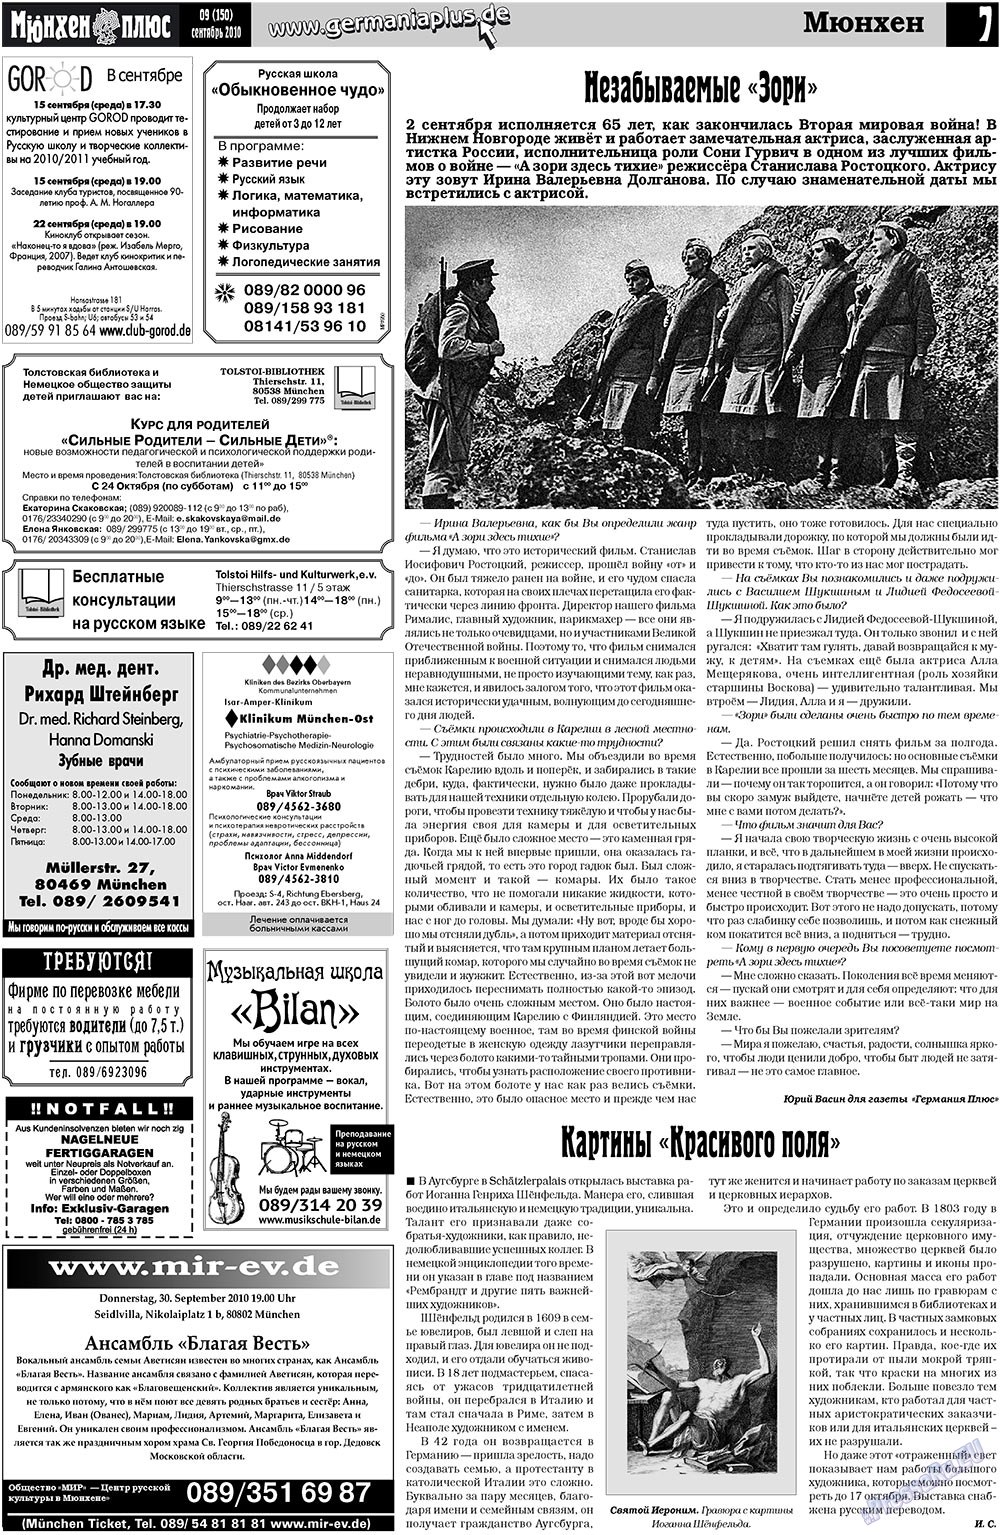 Германия плюс, газета. 2010 №9 стр.7